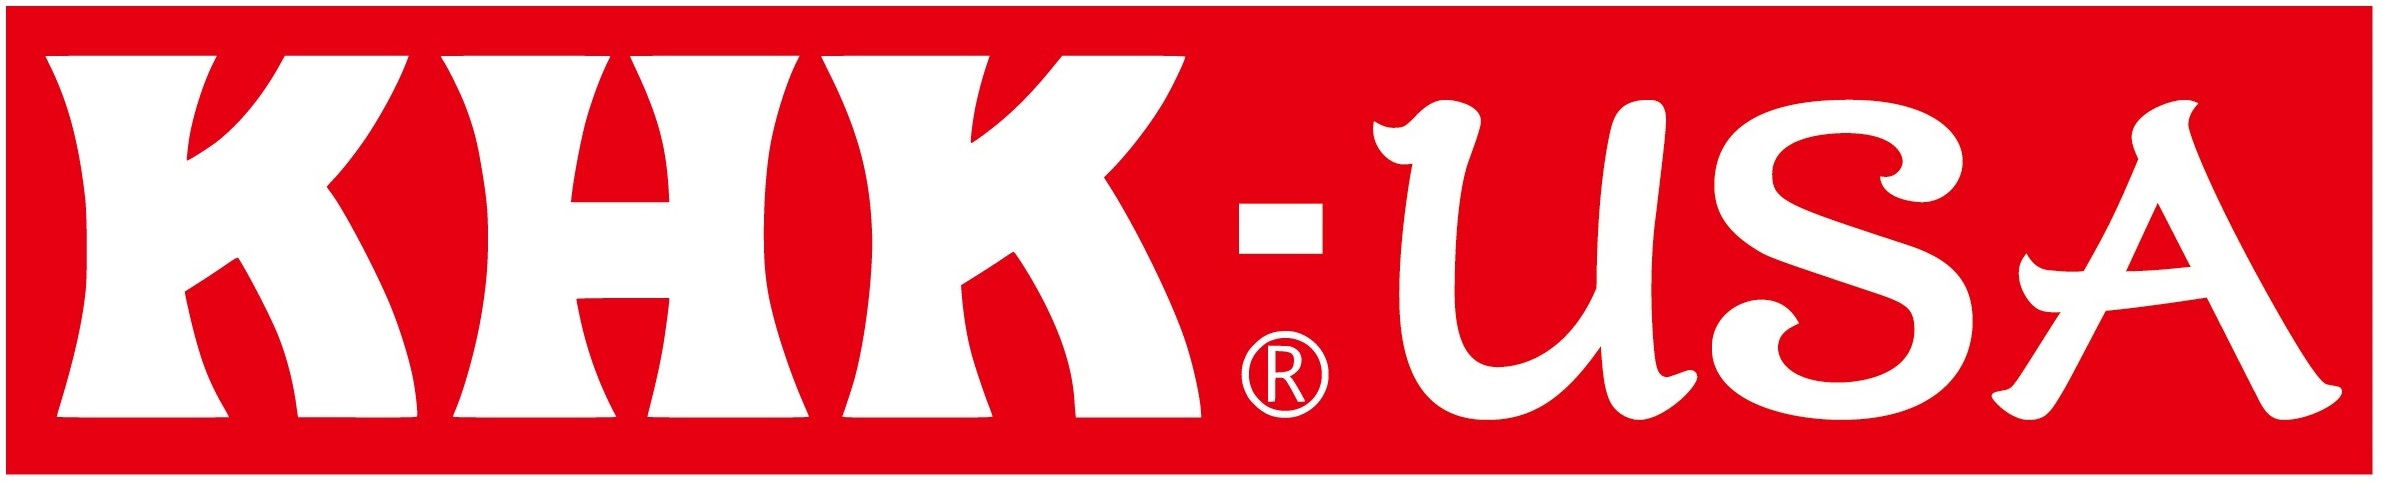 KHK USA Announces New Website